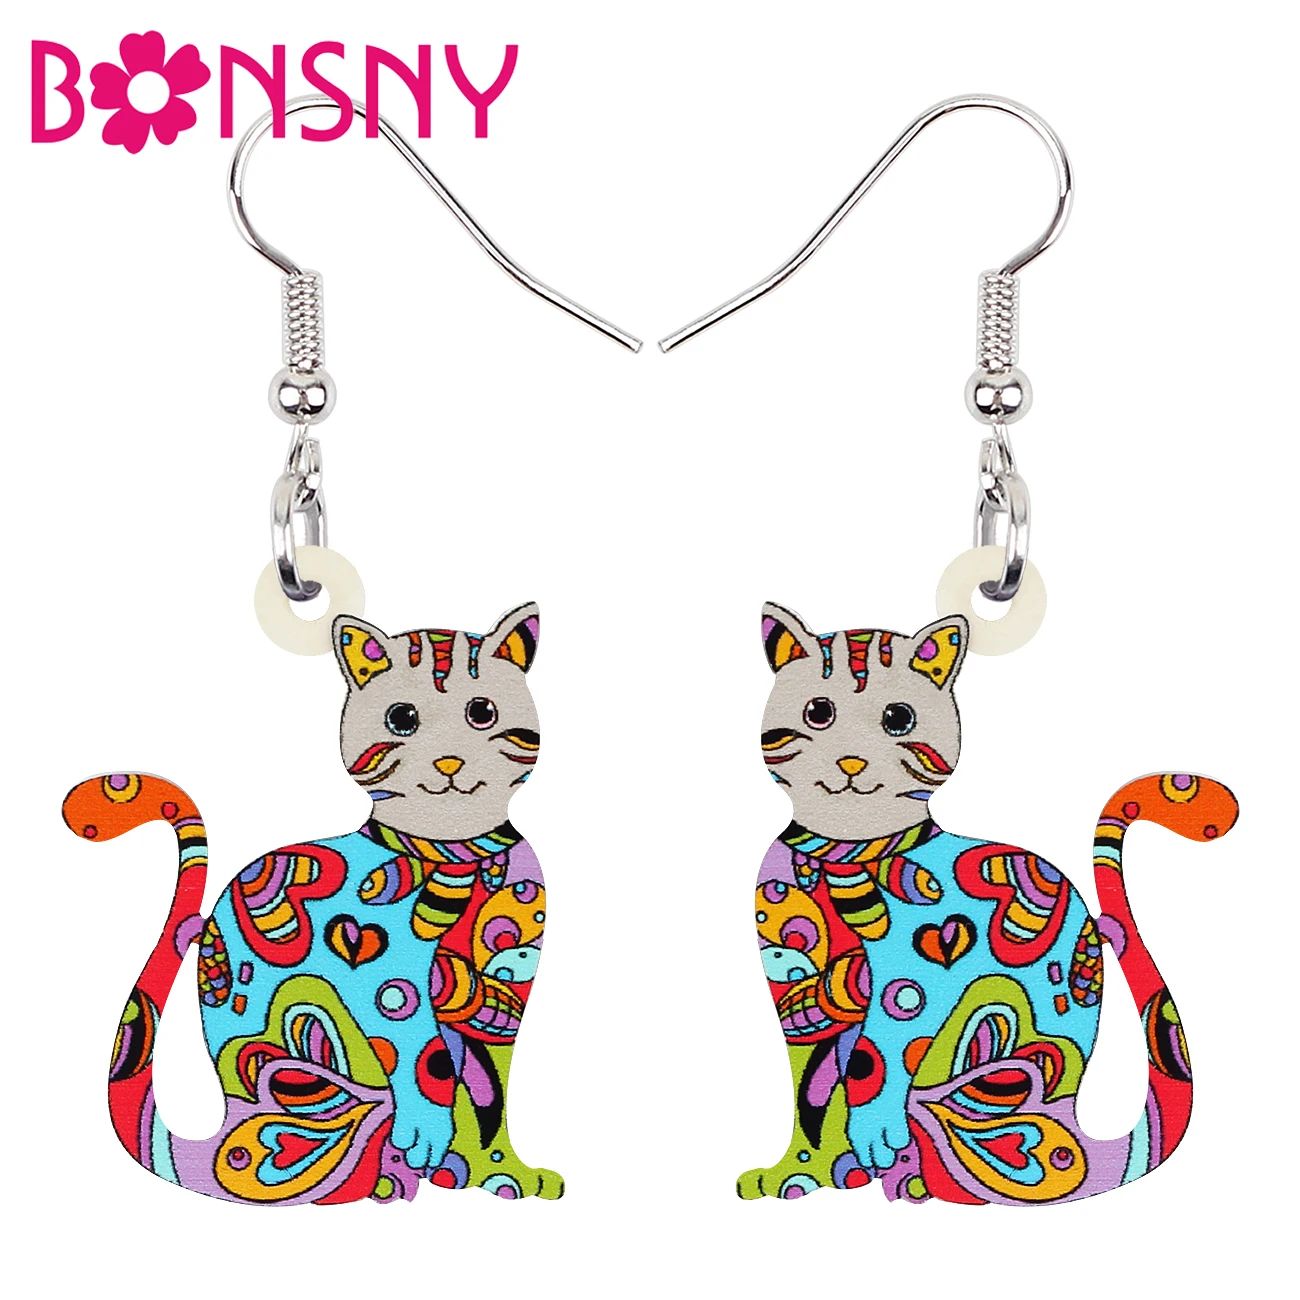 

BONSNY Acrylic Lovely Floral Cat Kitten Earrings Long Drop Dangle Fashion Novelty Pets Jewelry For Women Girls Teens Gifts